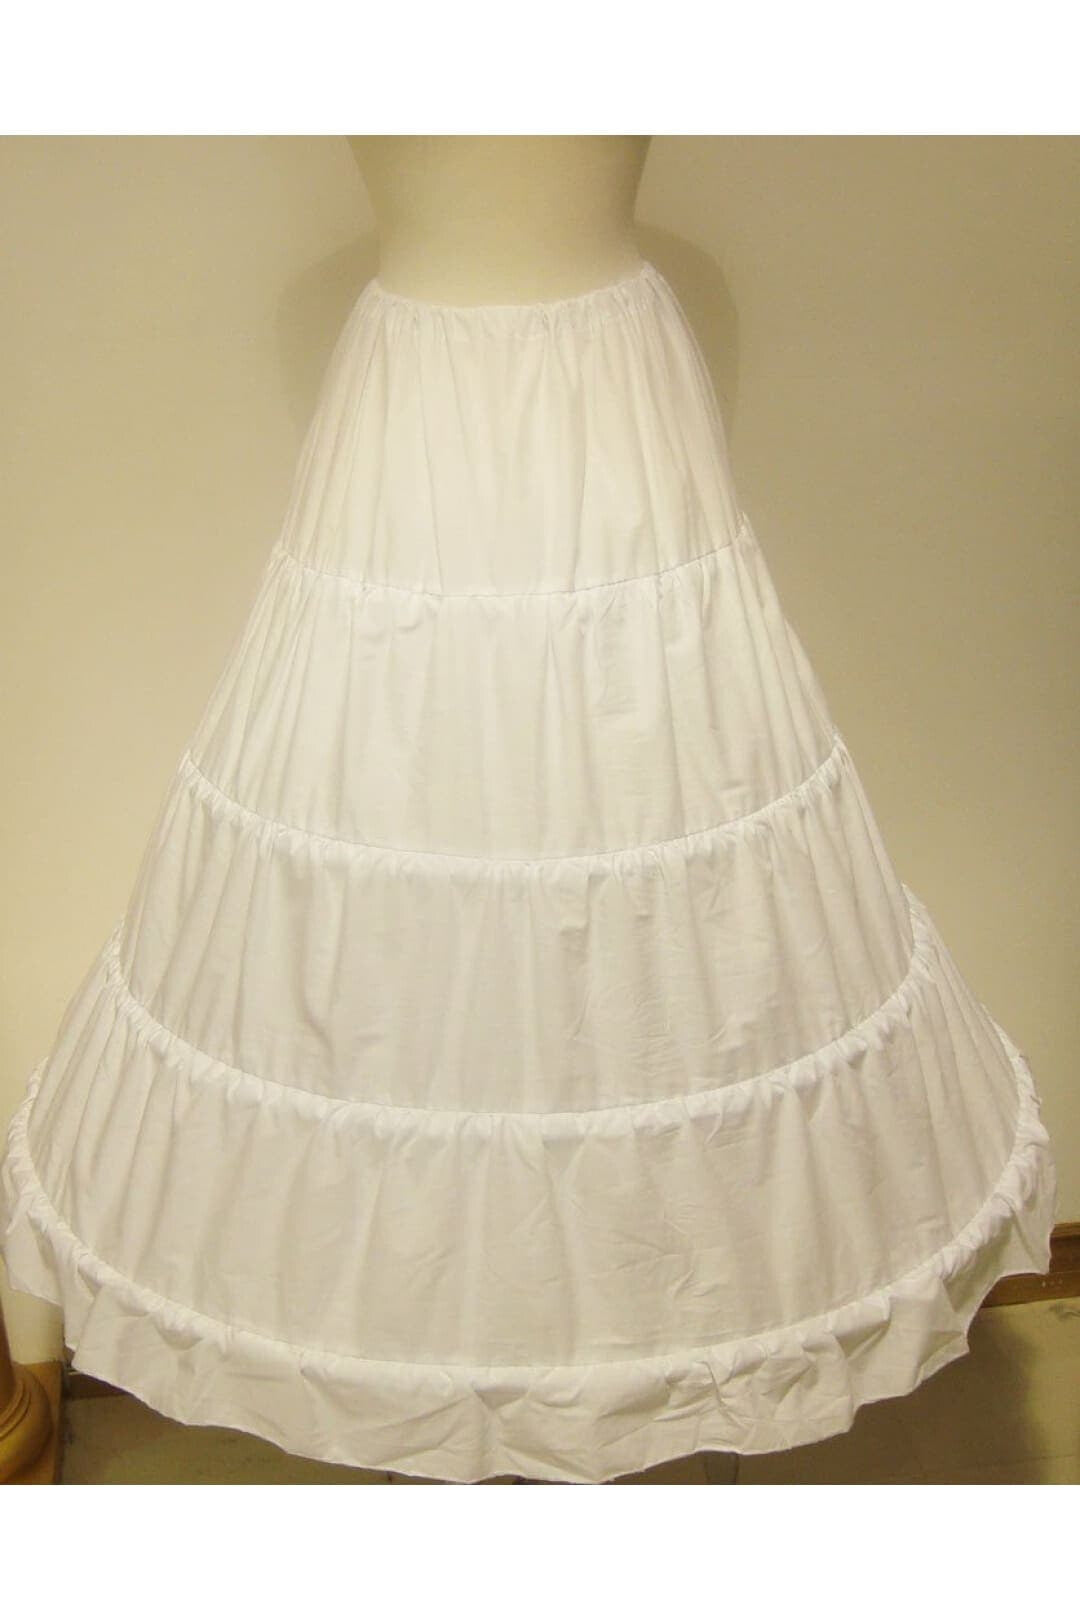 4 hoop petticoat for wedding, quinceanera, ball gown